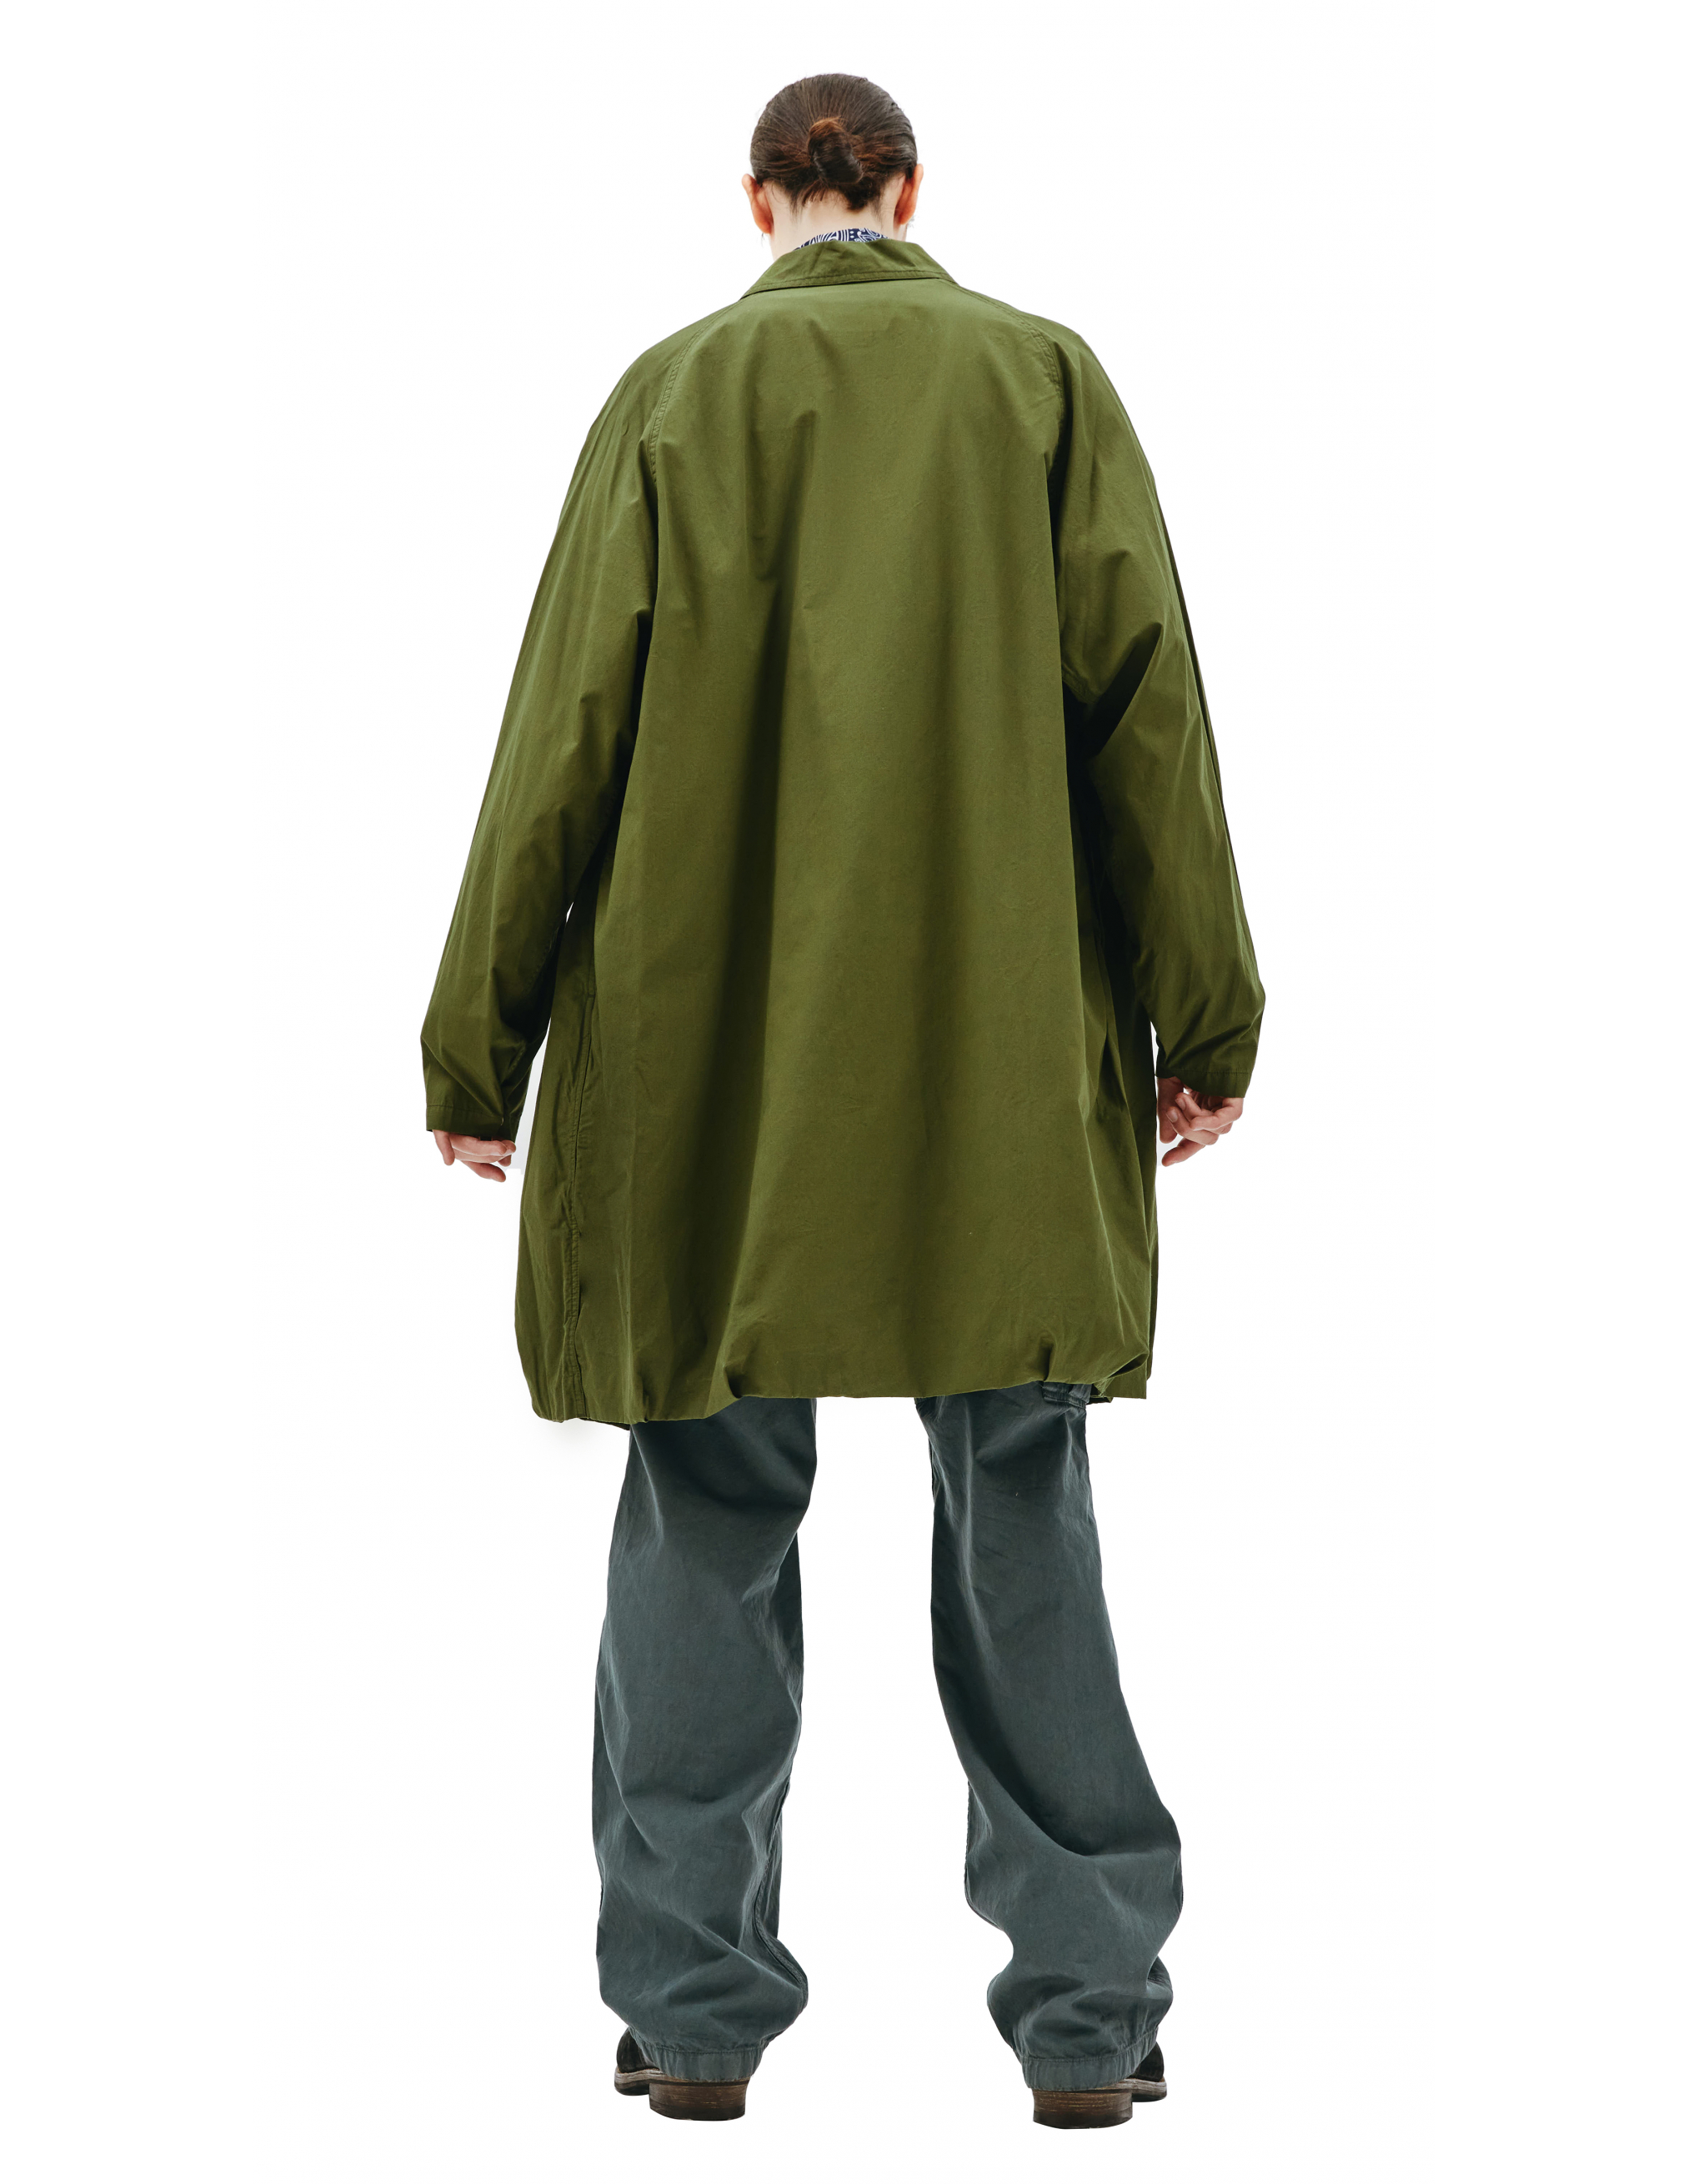 Пальто из хлопка с накладным карманом - Visvim 0121205013027/olive Фото 4